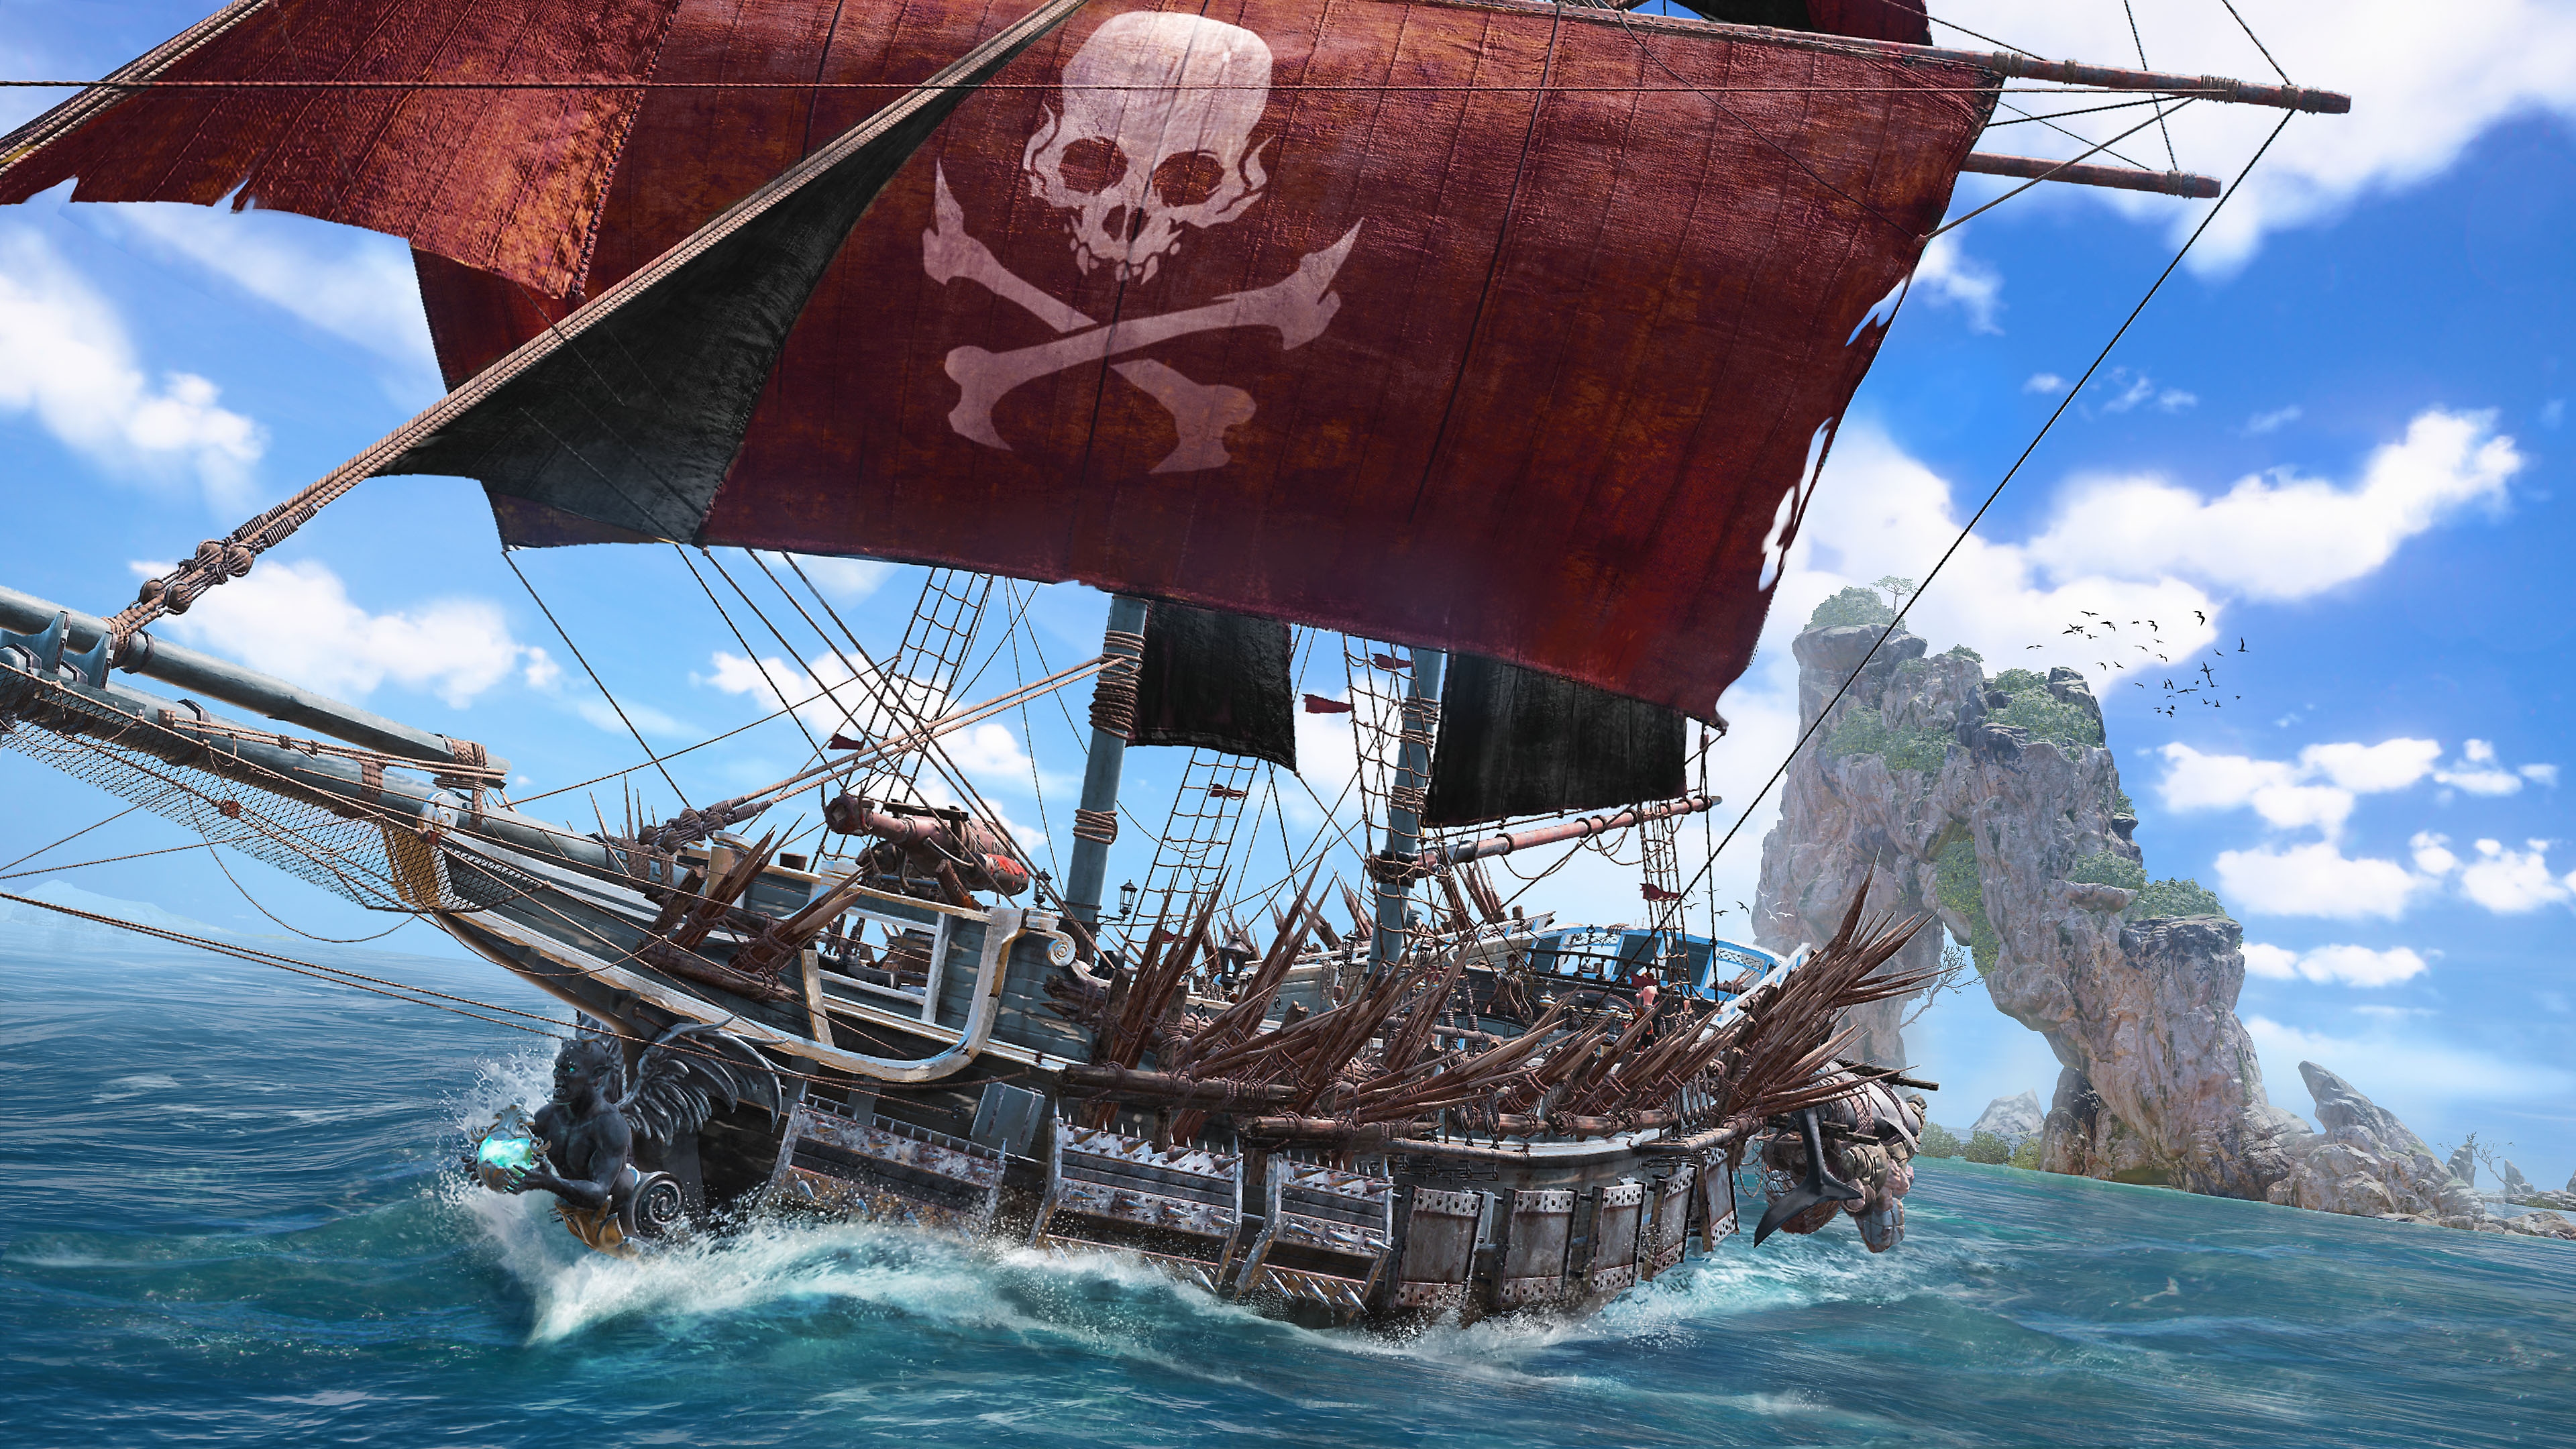 Skull & Bones-skærmbillede, der viser et piratskib med et piratflag på et rødt storsejl